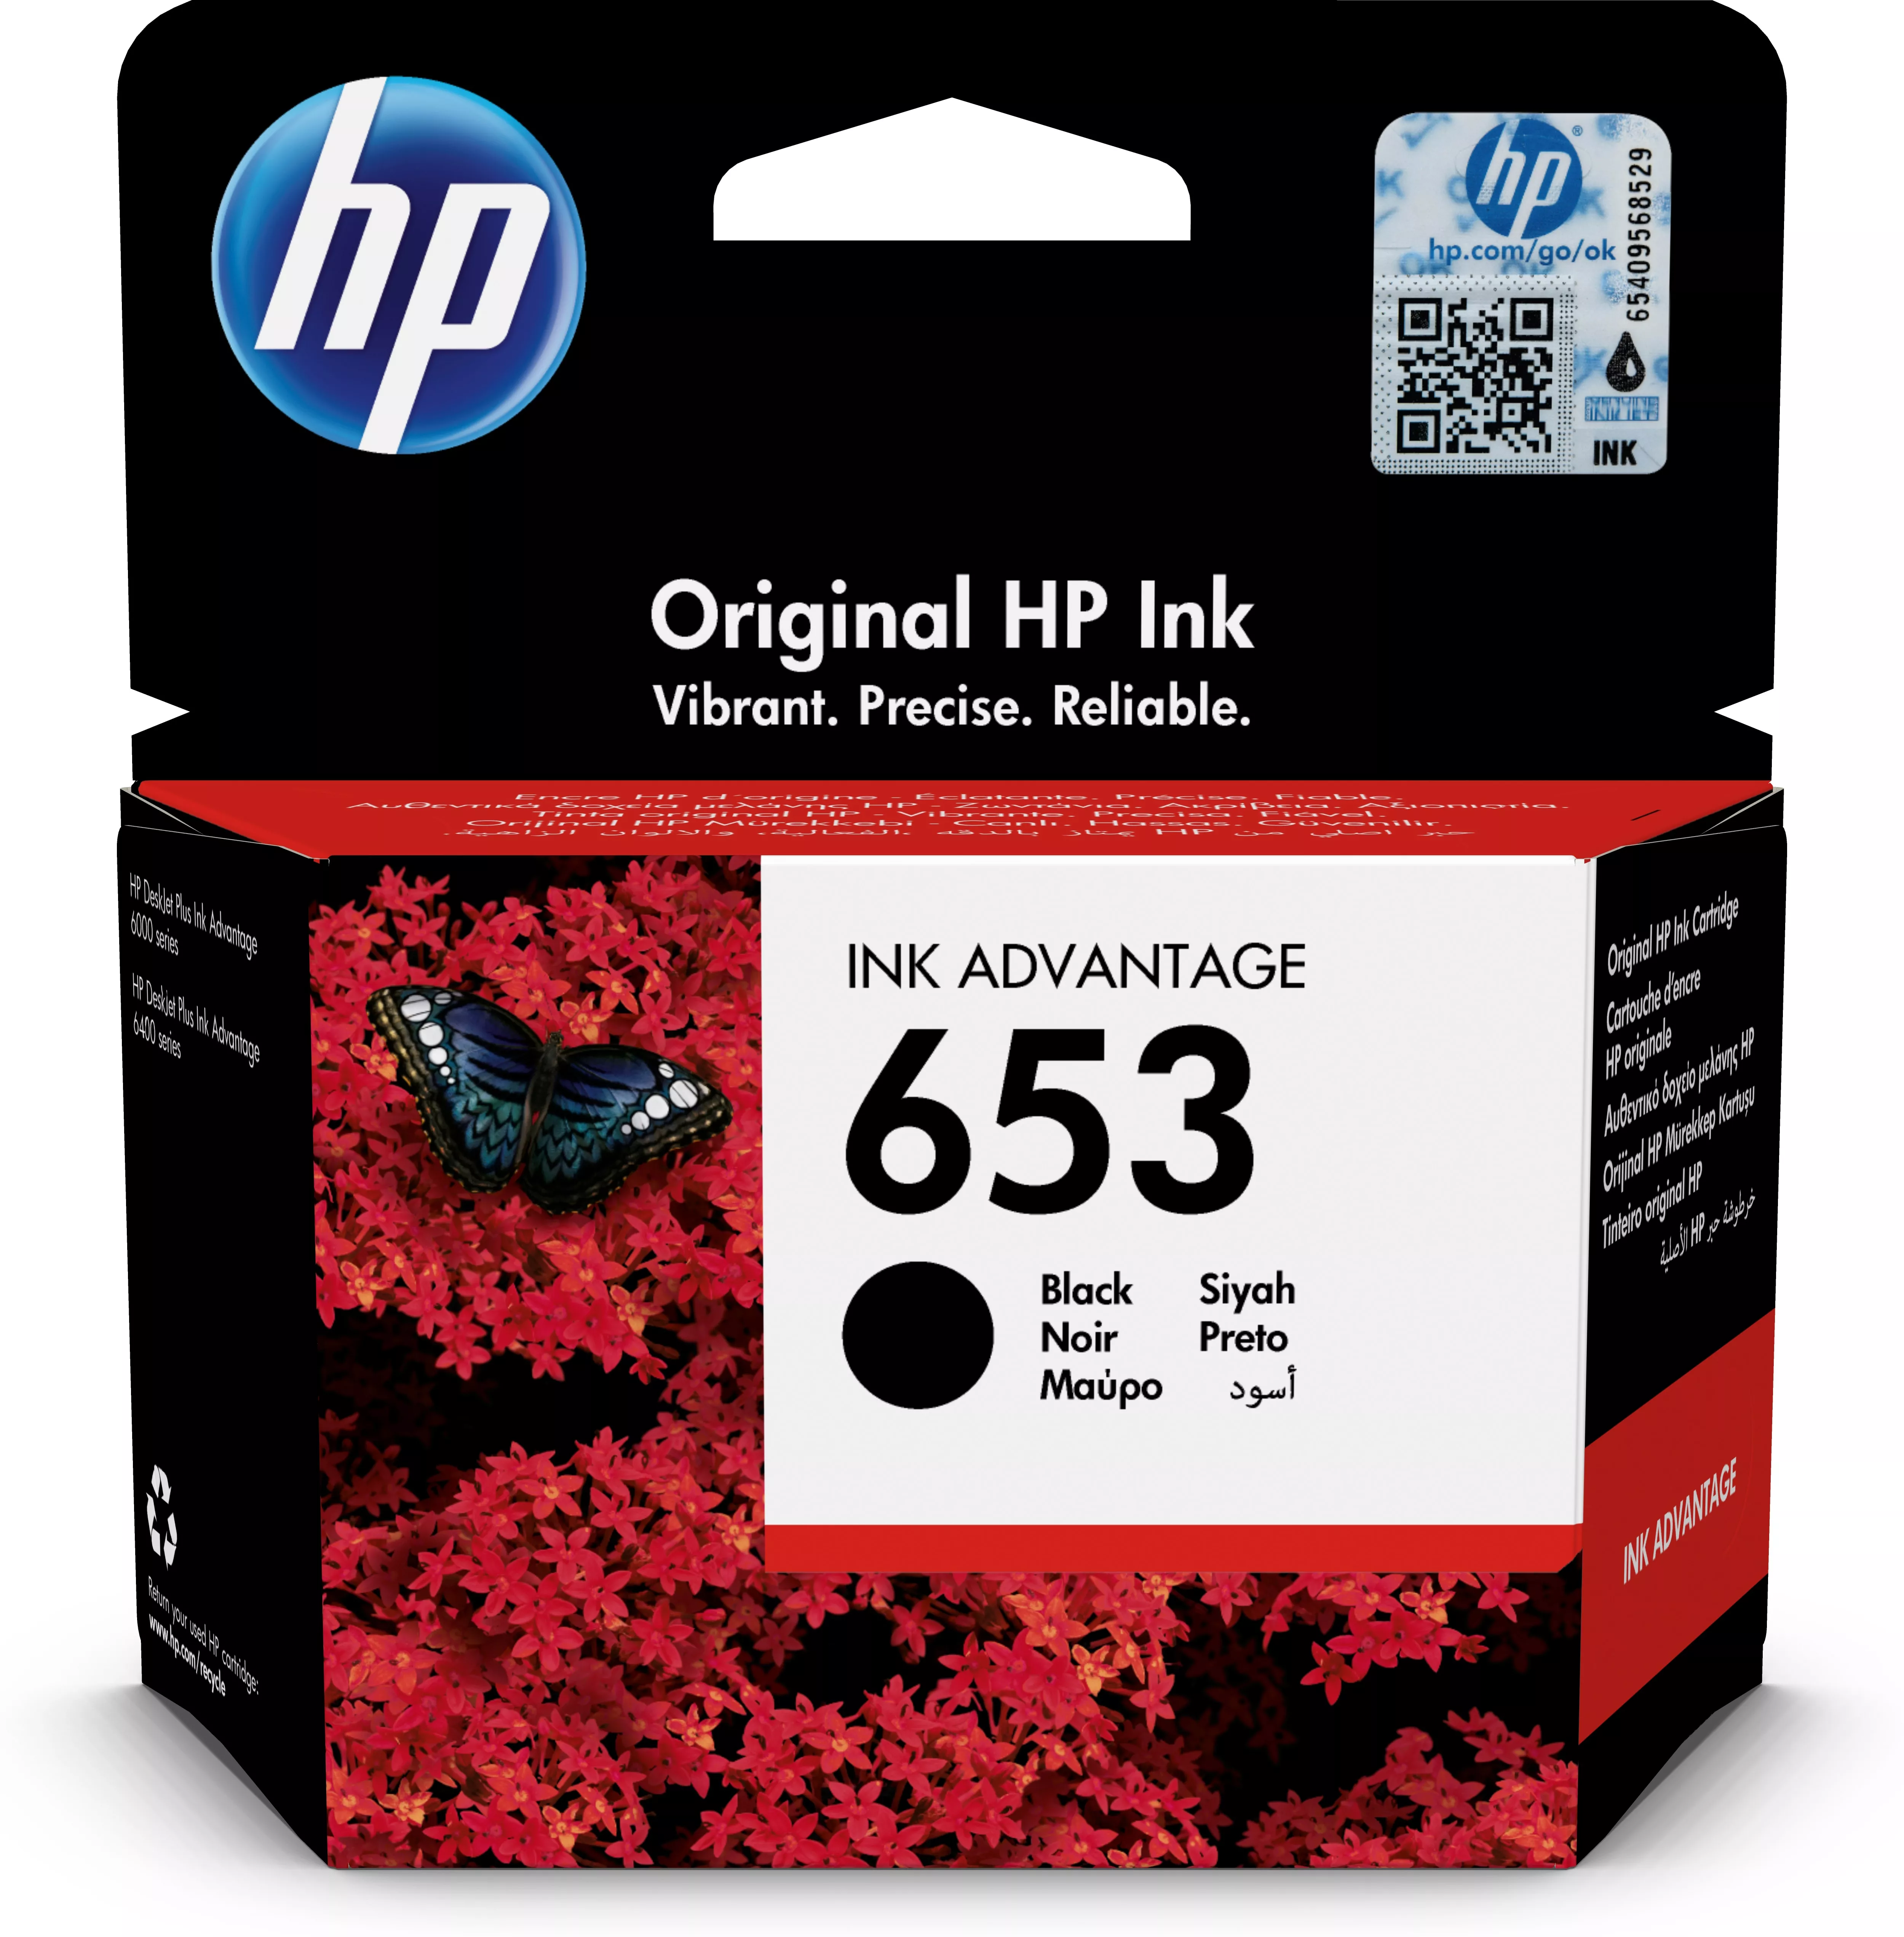 Achat HP 653 Black Original Ink Advantage Cartridge au meilleur prix